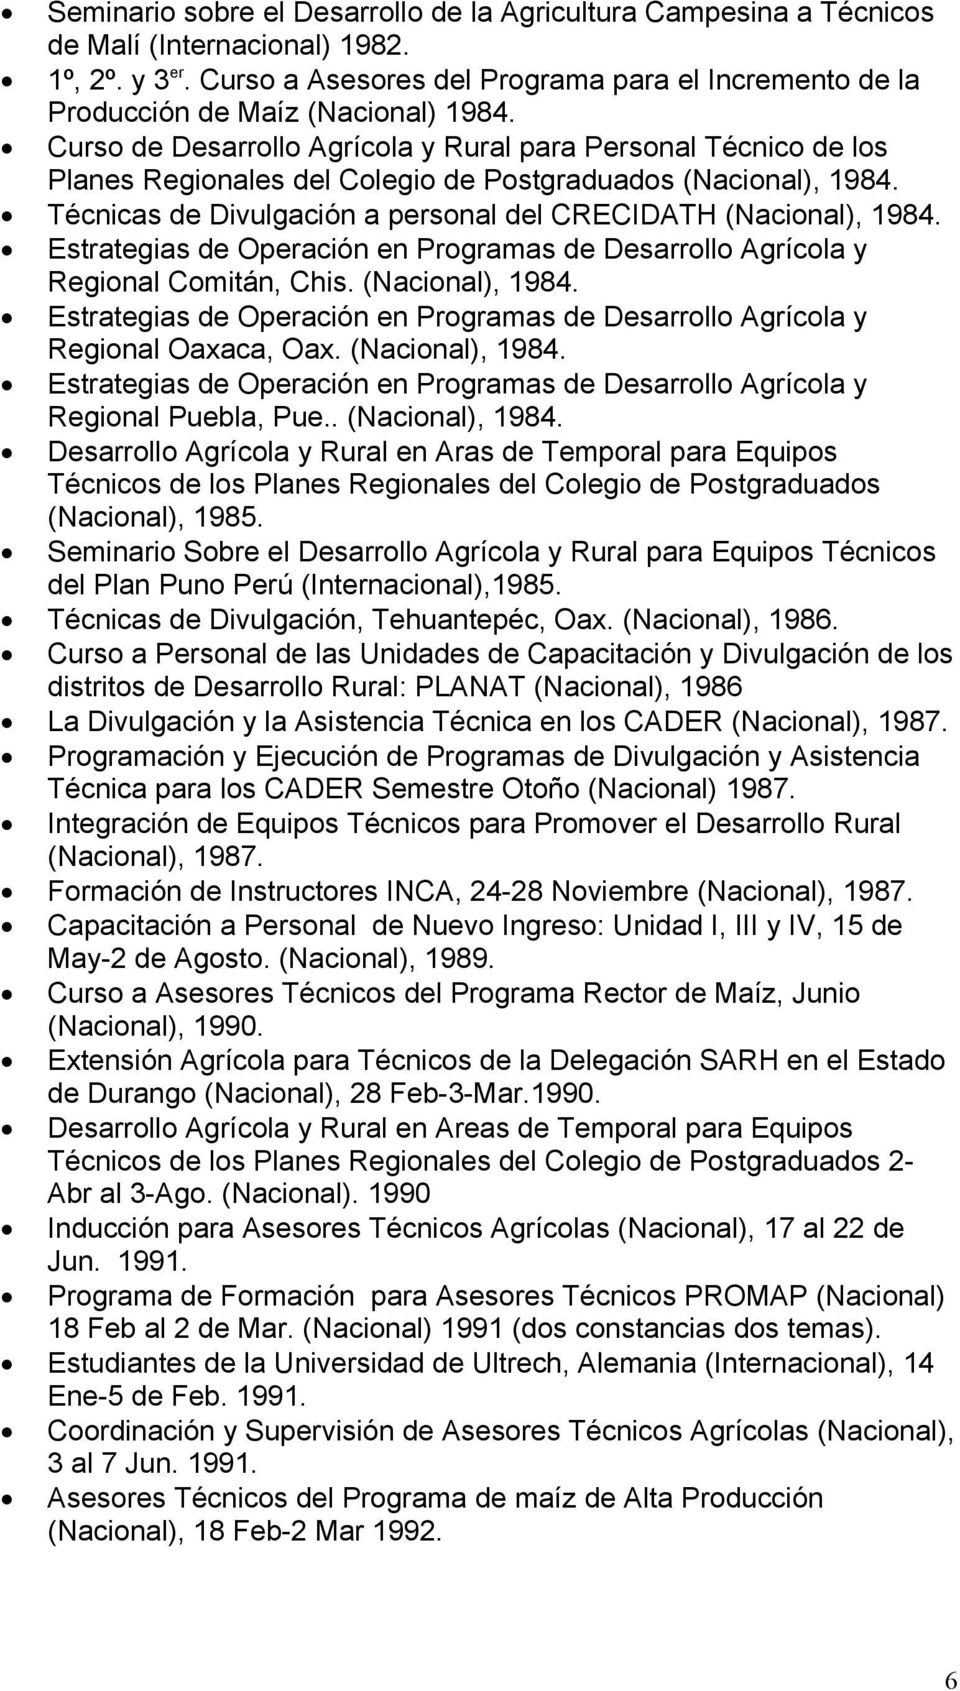 Curso de Desarrollo Agrícola y Rural para Personal Técnico de los Planes Regionales del Colegio de Postgraduados (Nacional), 1984. Técnicas de Divulgación a personal del CRECIDATH (Nacional), 1984.